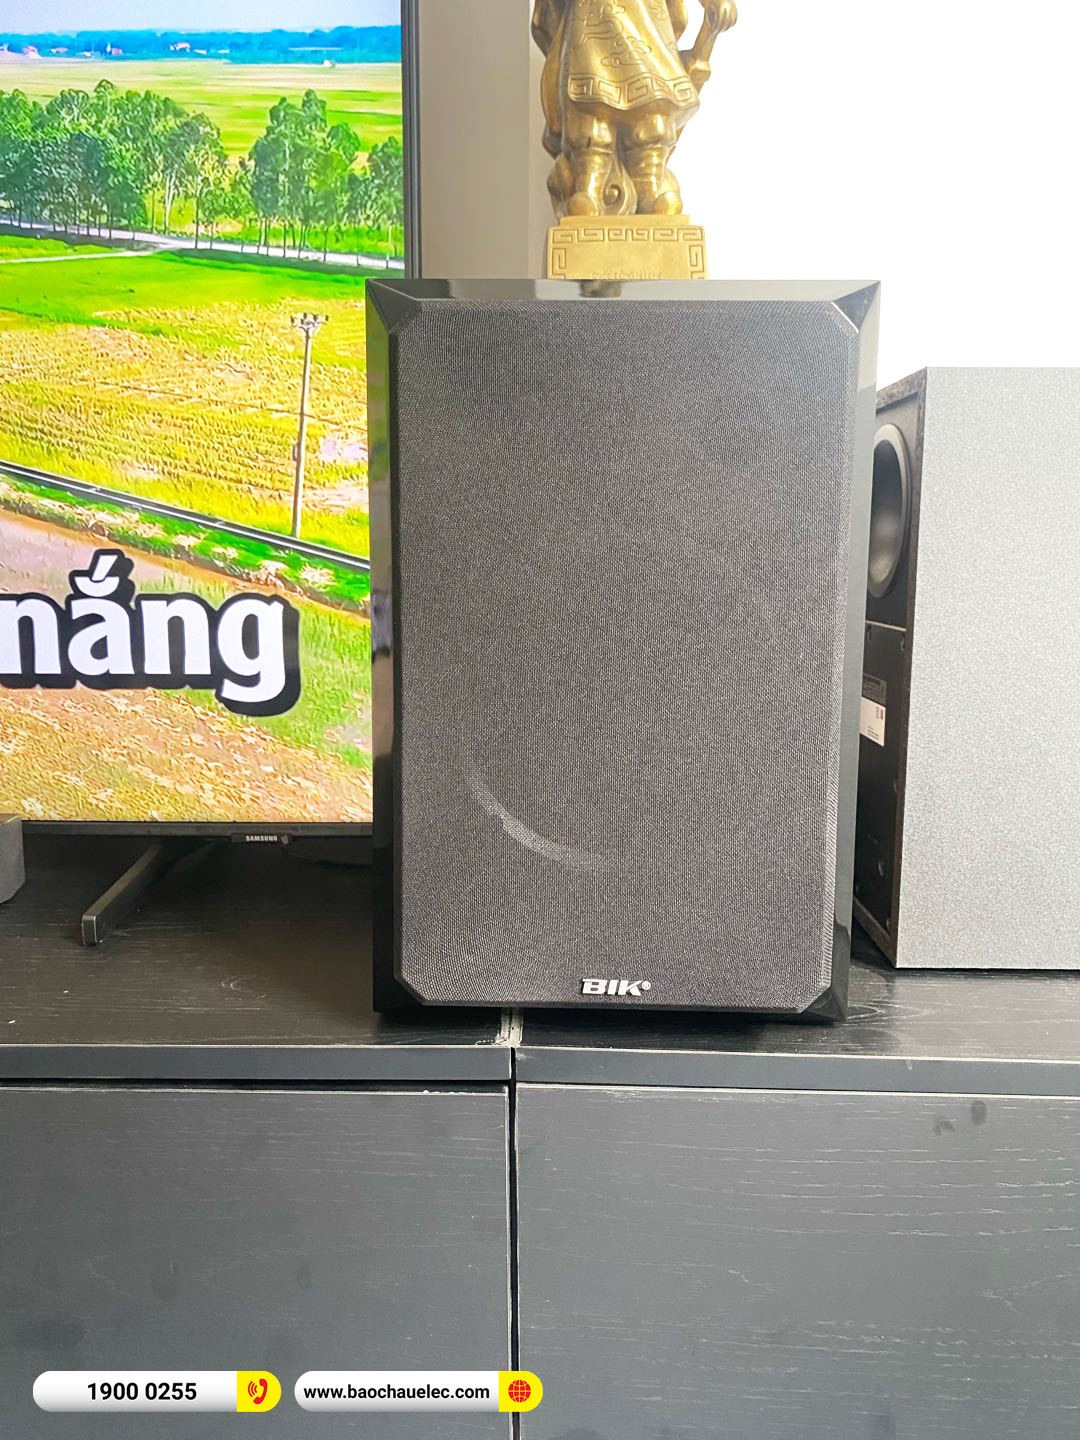 Lắp đặt dàn karaoke BIK hơn 18tr cho anh Hiền tại Hà Nội